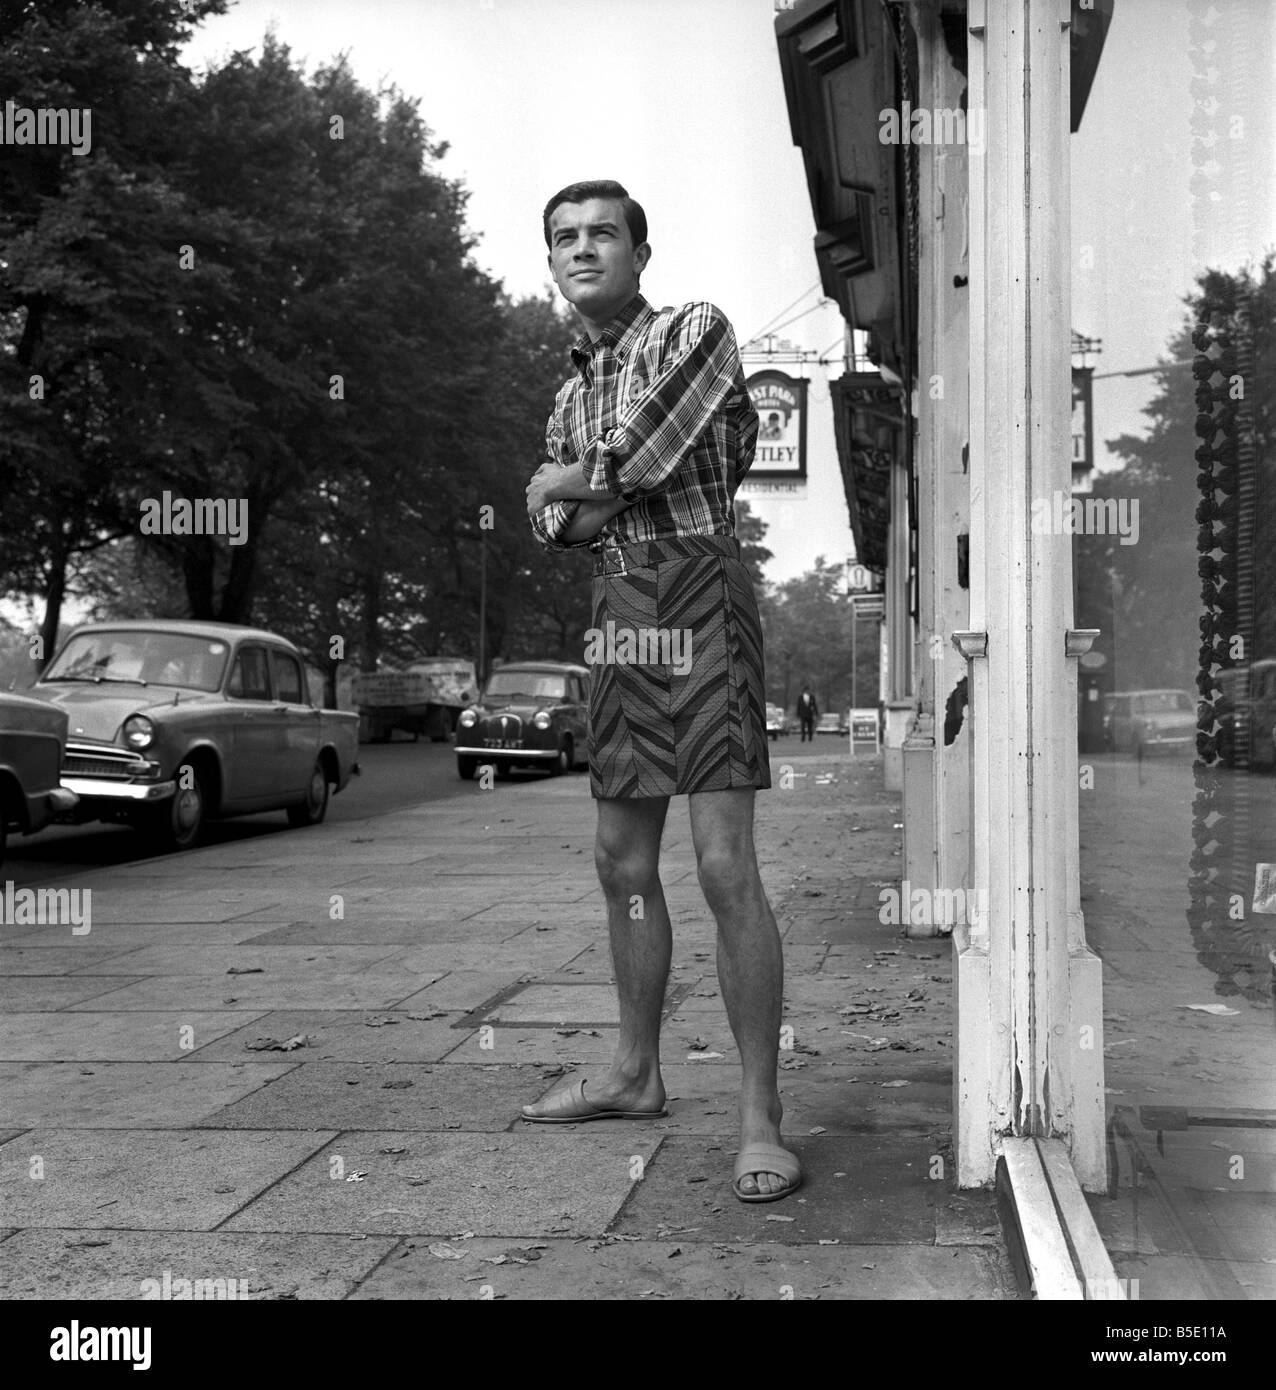 Mens Fashion: Tony Barnes aus London der 80er Jahre Stil für Männer - einen Minirock tragen könnte. September 1966 W9262 Stockfoto